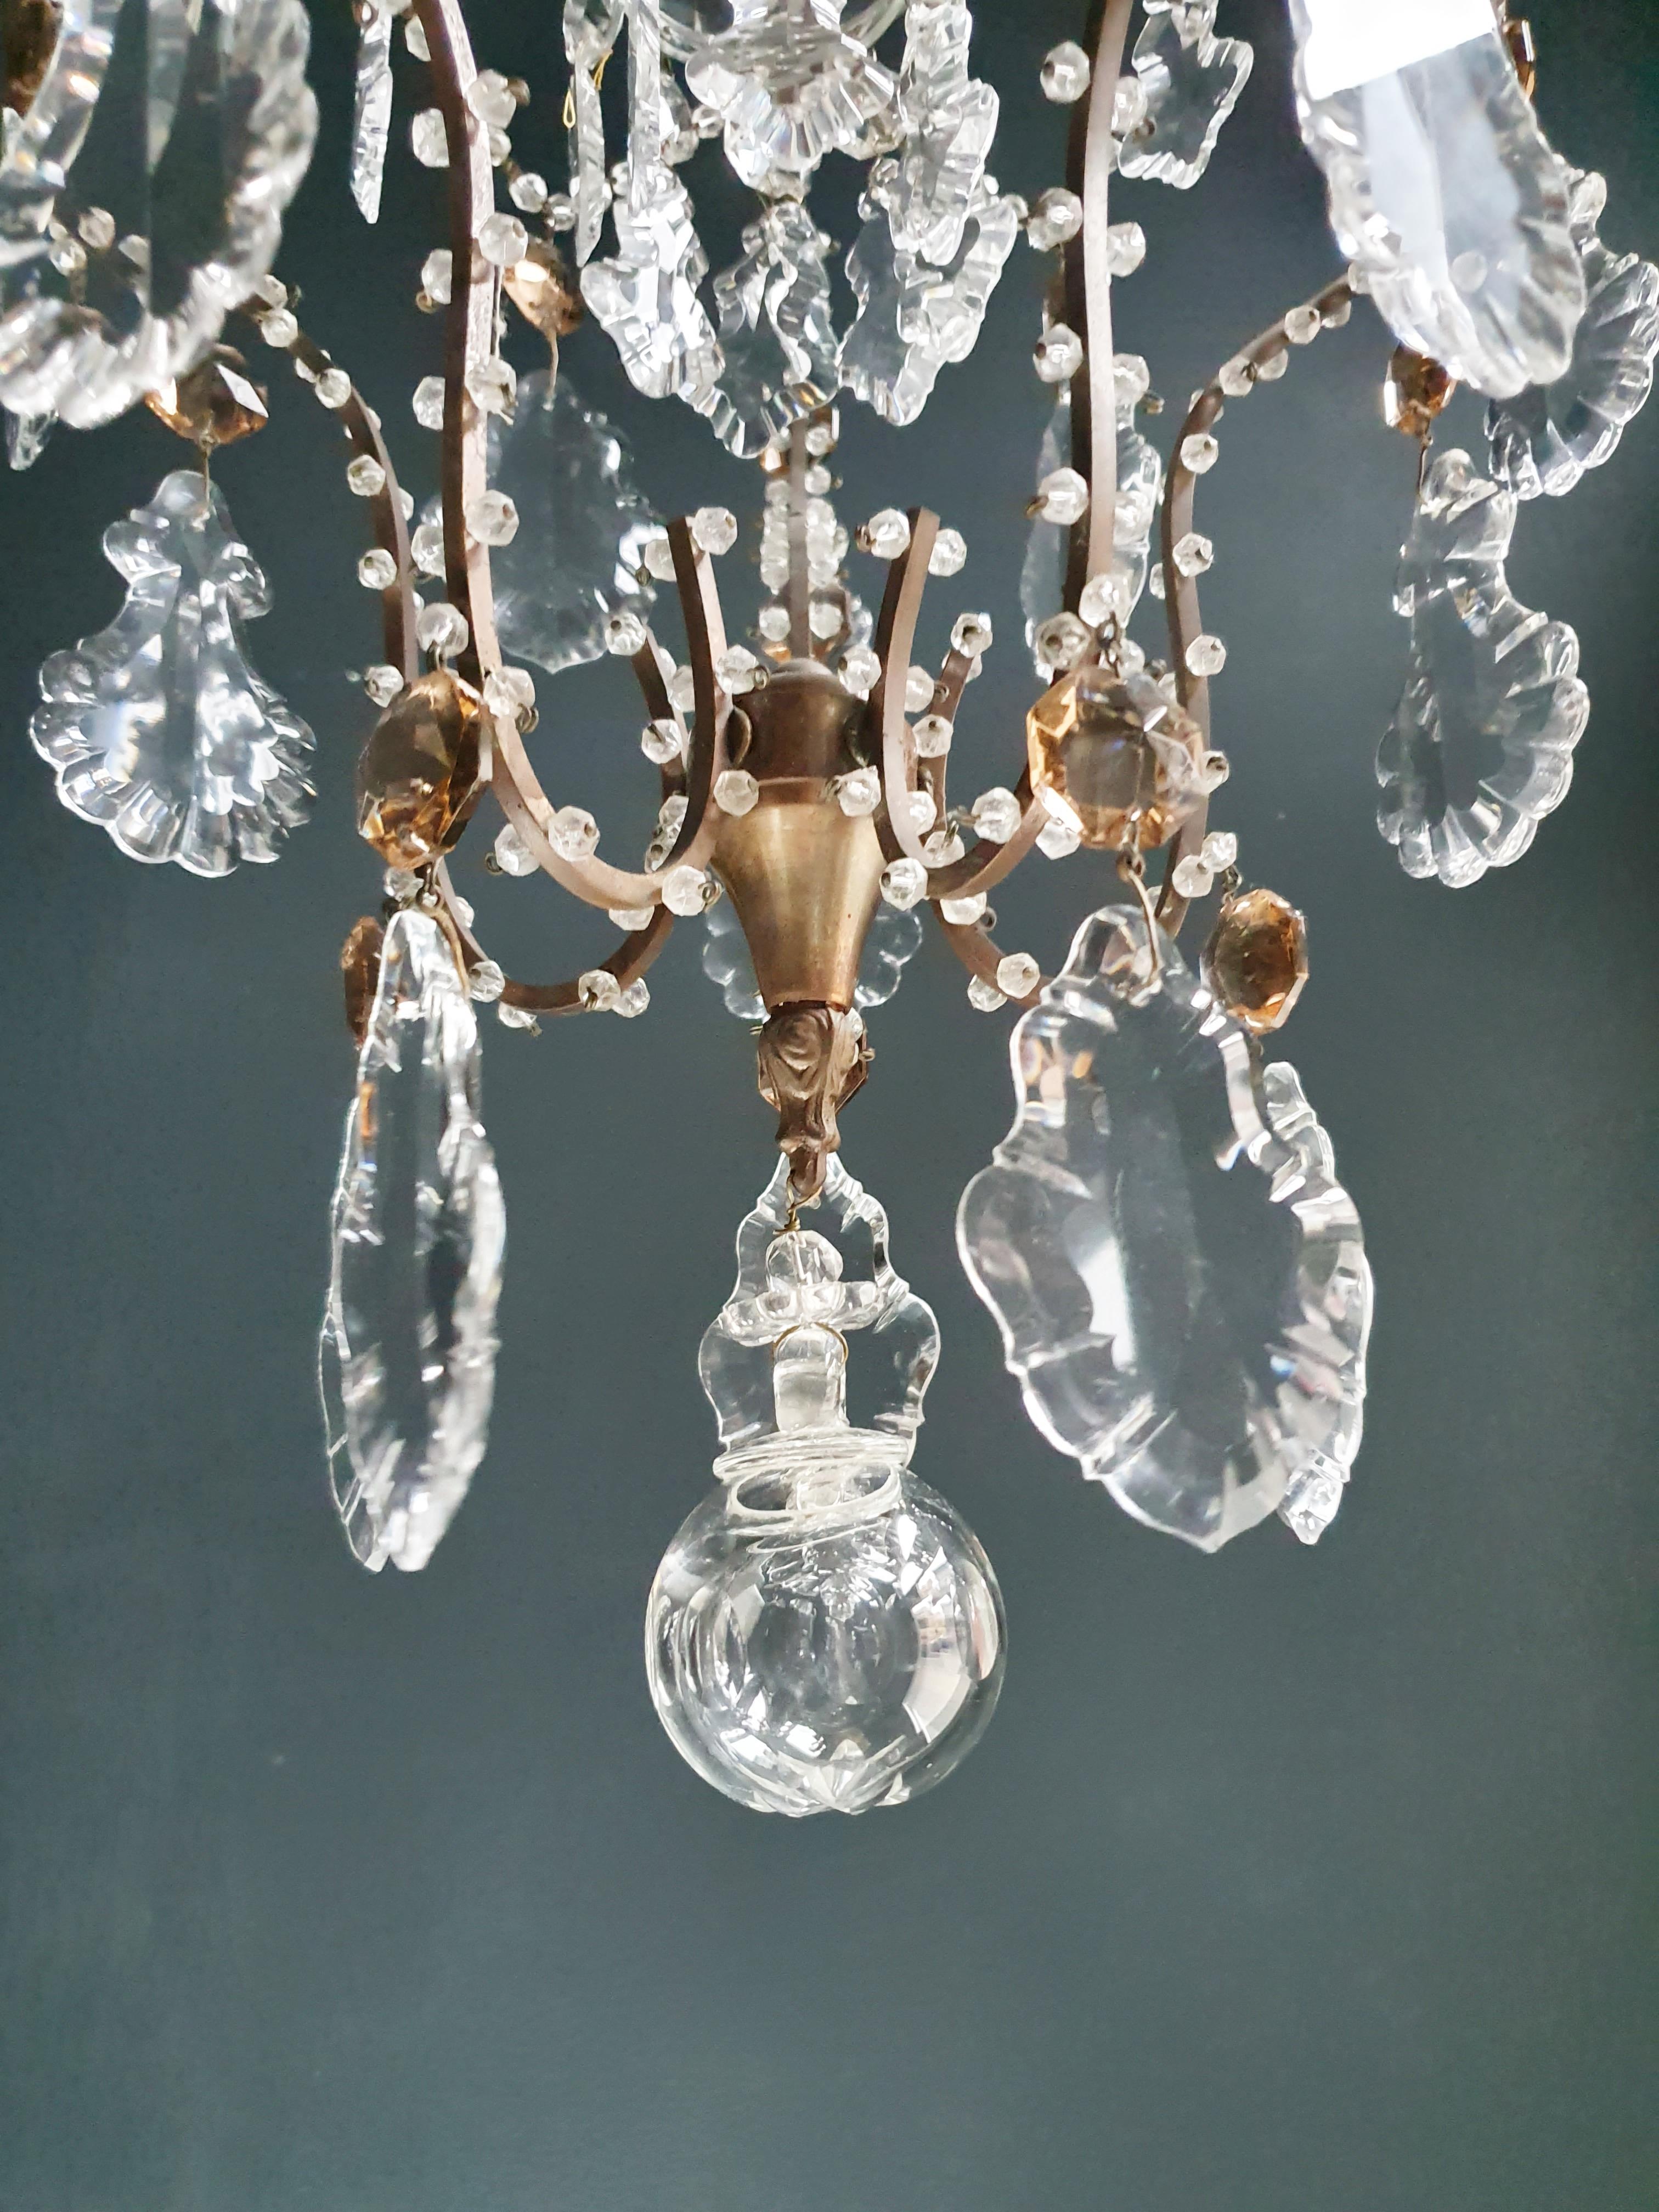 Hand-Knotted Lustré Cage Chandelier Crystal Ceiling Lamp Hall Lustre Antique Art Nouveau